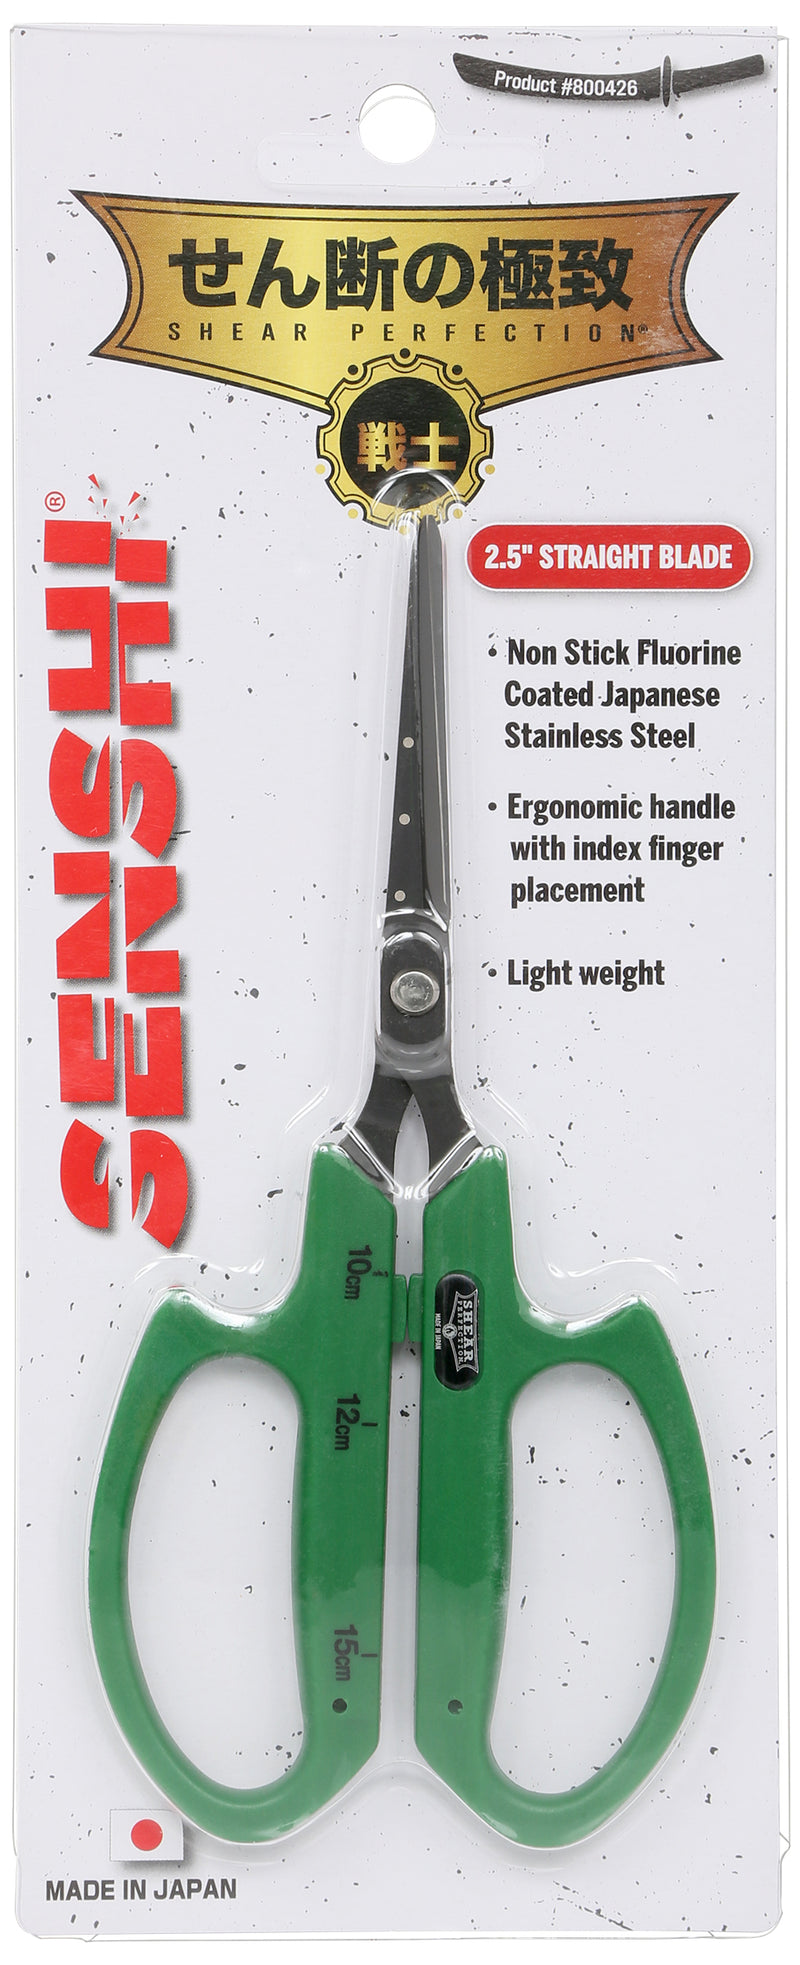 Shear Perfection® Senshi® Bonsai Scissor - 2.5 in Straight Non Stick Blades